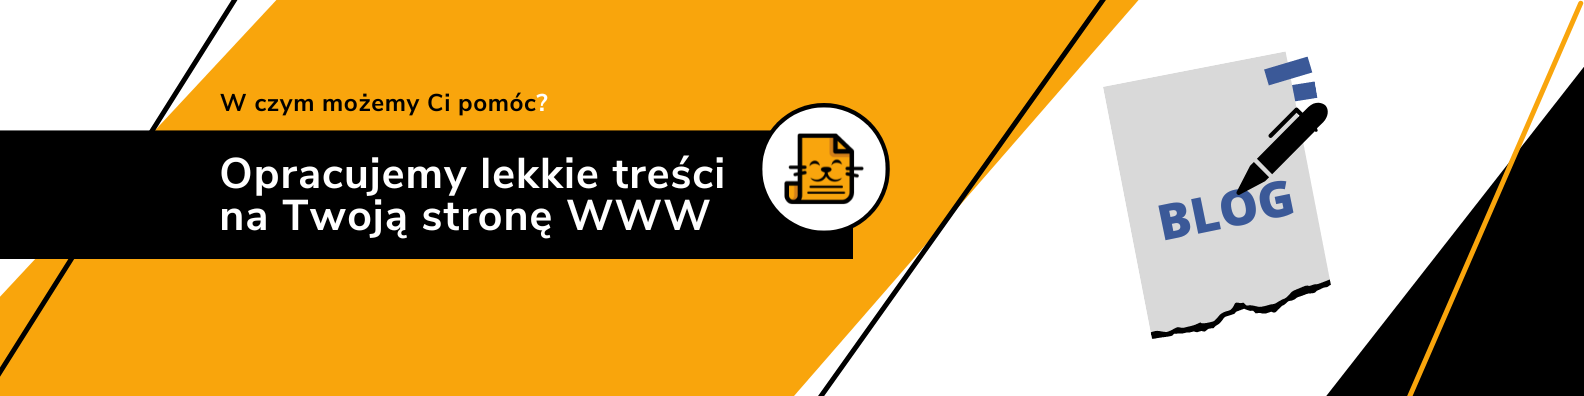 Marcating - Agencja marketingowa w Rzeszowie - Opracujemy lekkie treści na Twoją stronę WWW